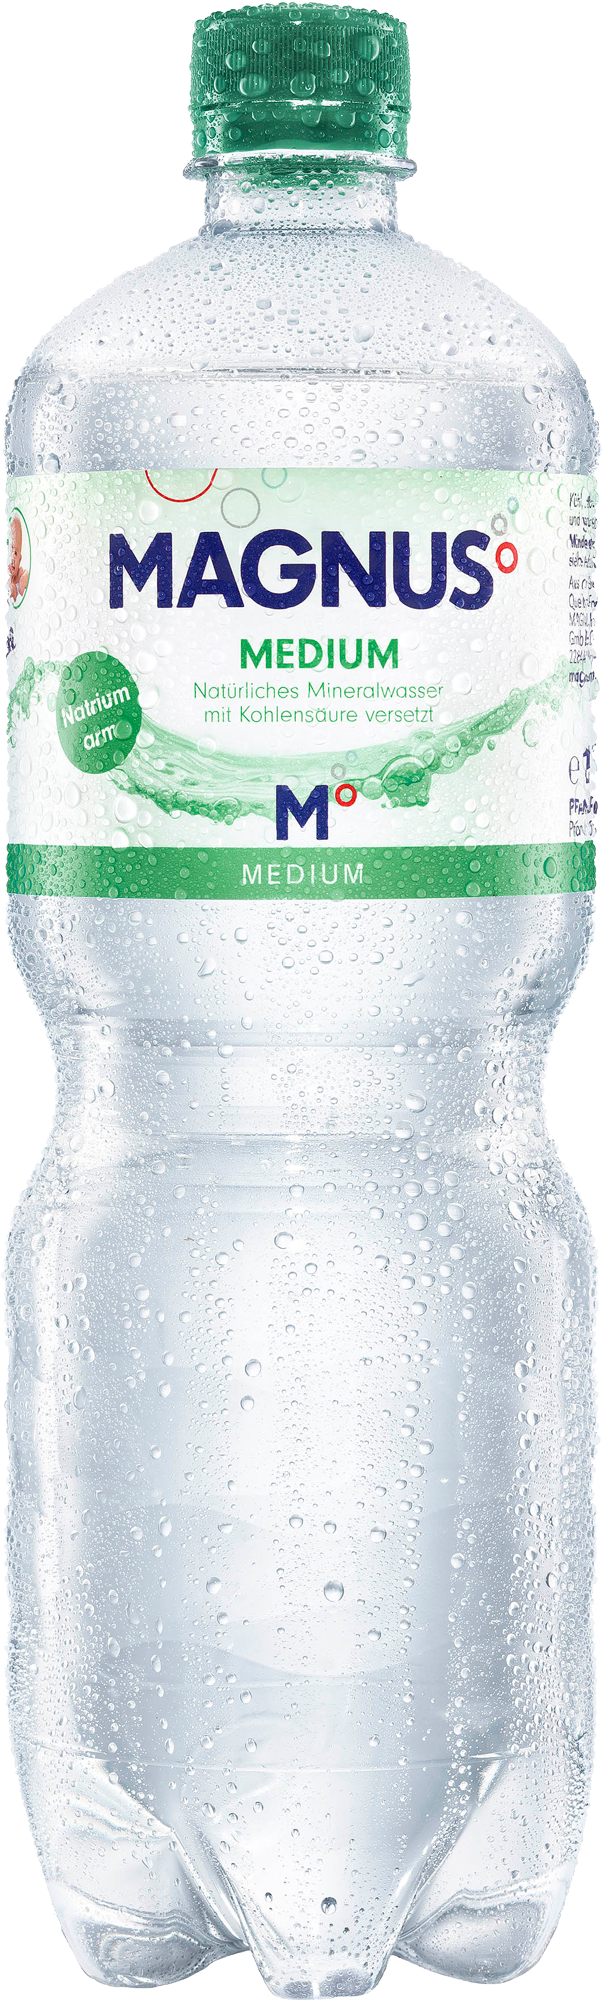 Magnus Mineralwasser Medium Kasten  12 x 1 l PET Einweg 